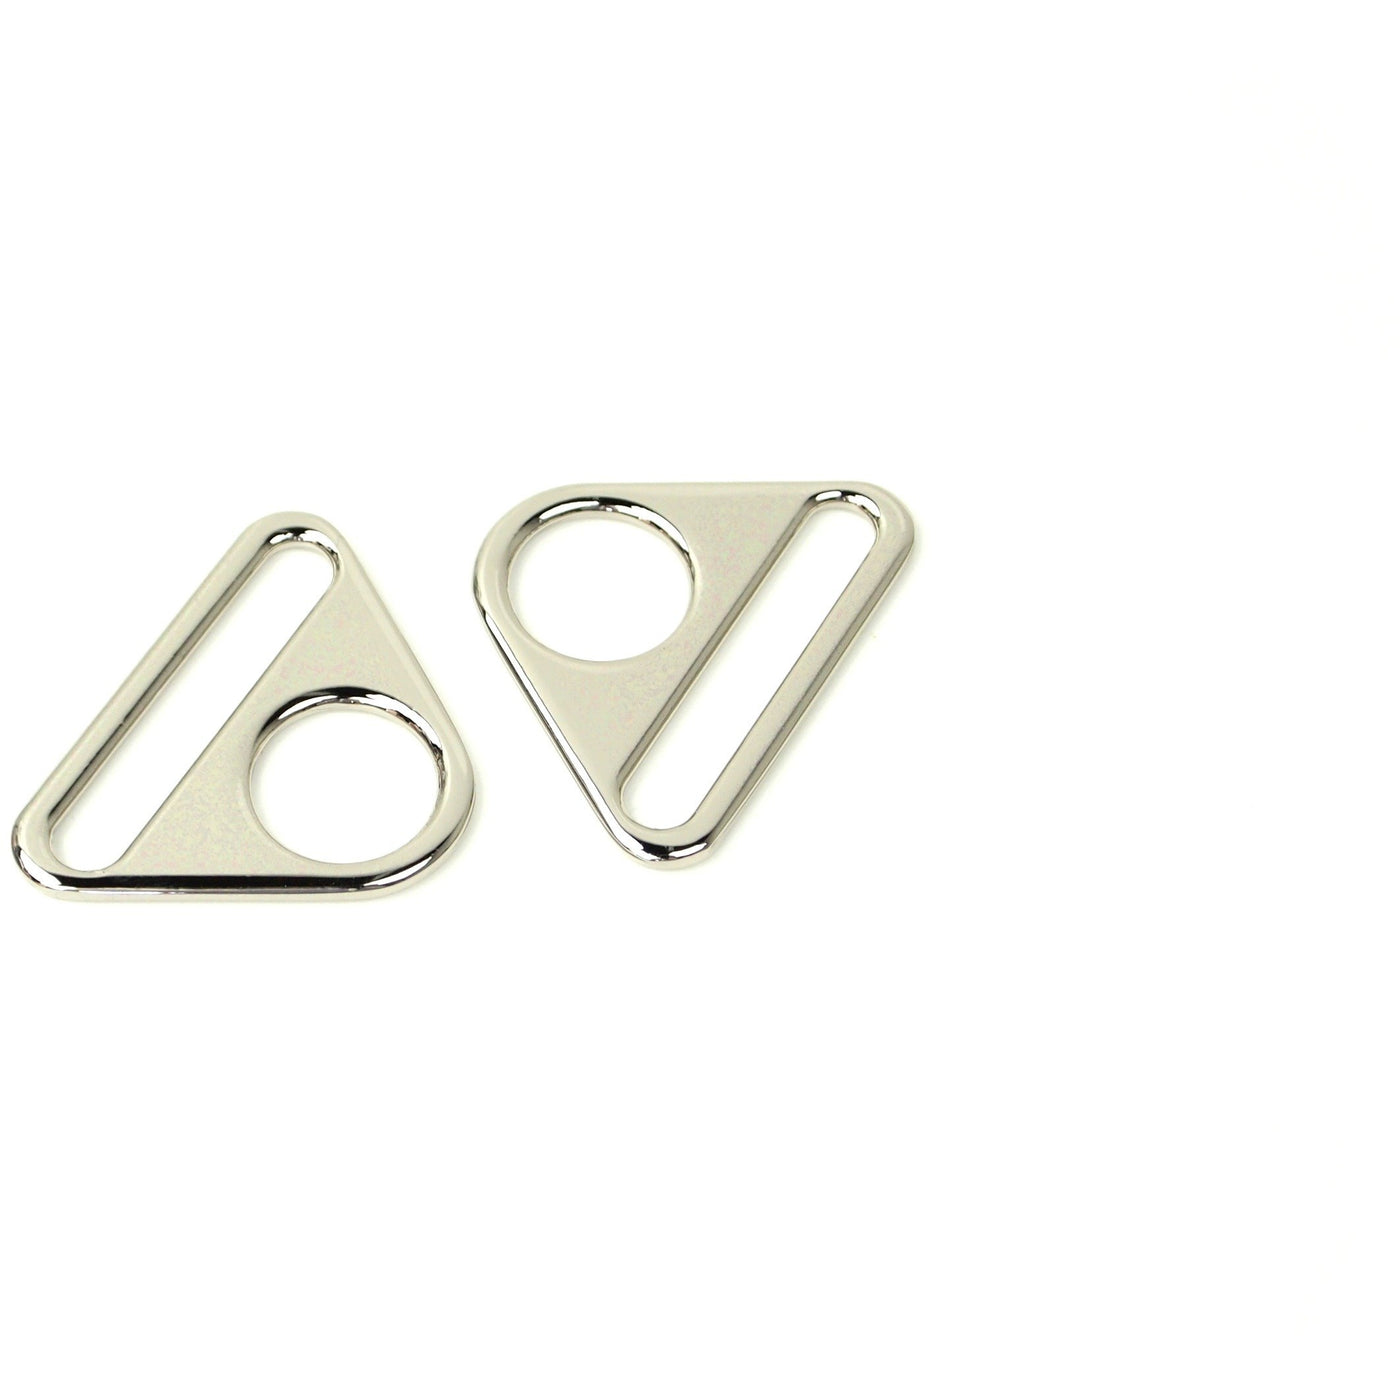 Dos anillos triangulares de 1 1/2"